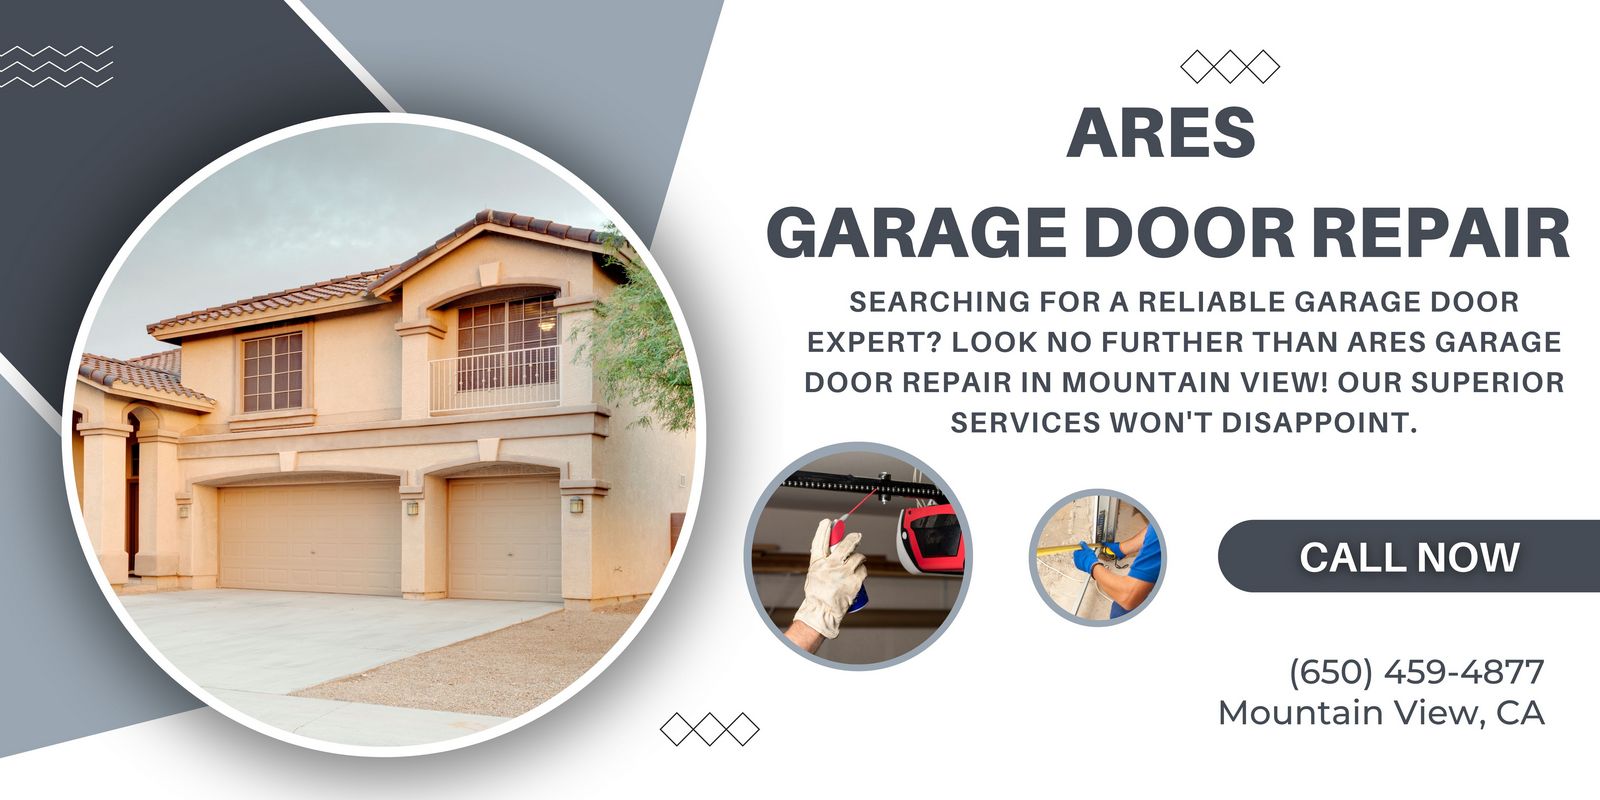 Ares Garage Door Repair